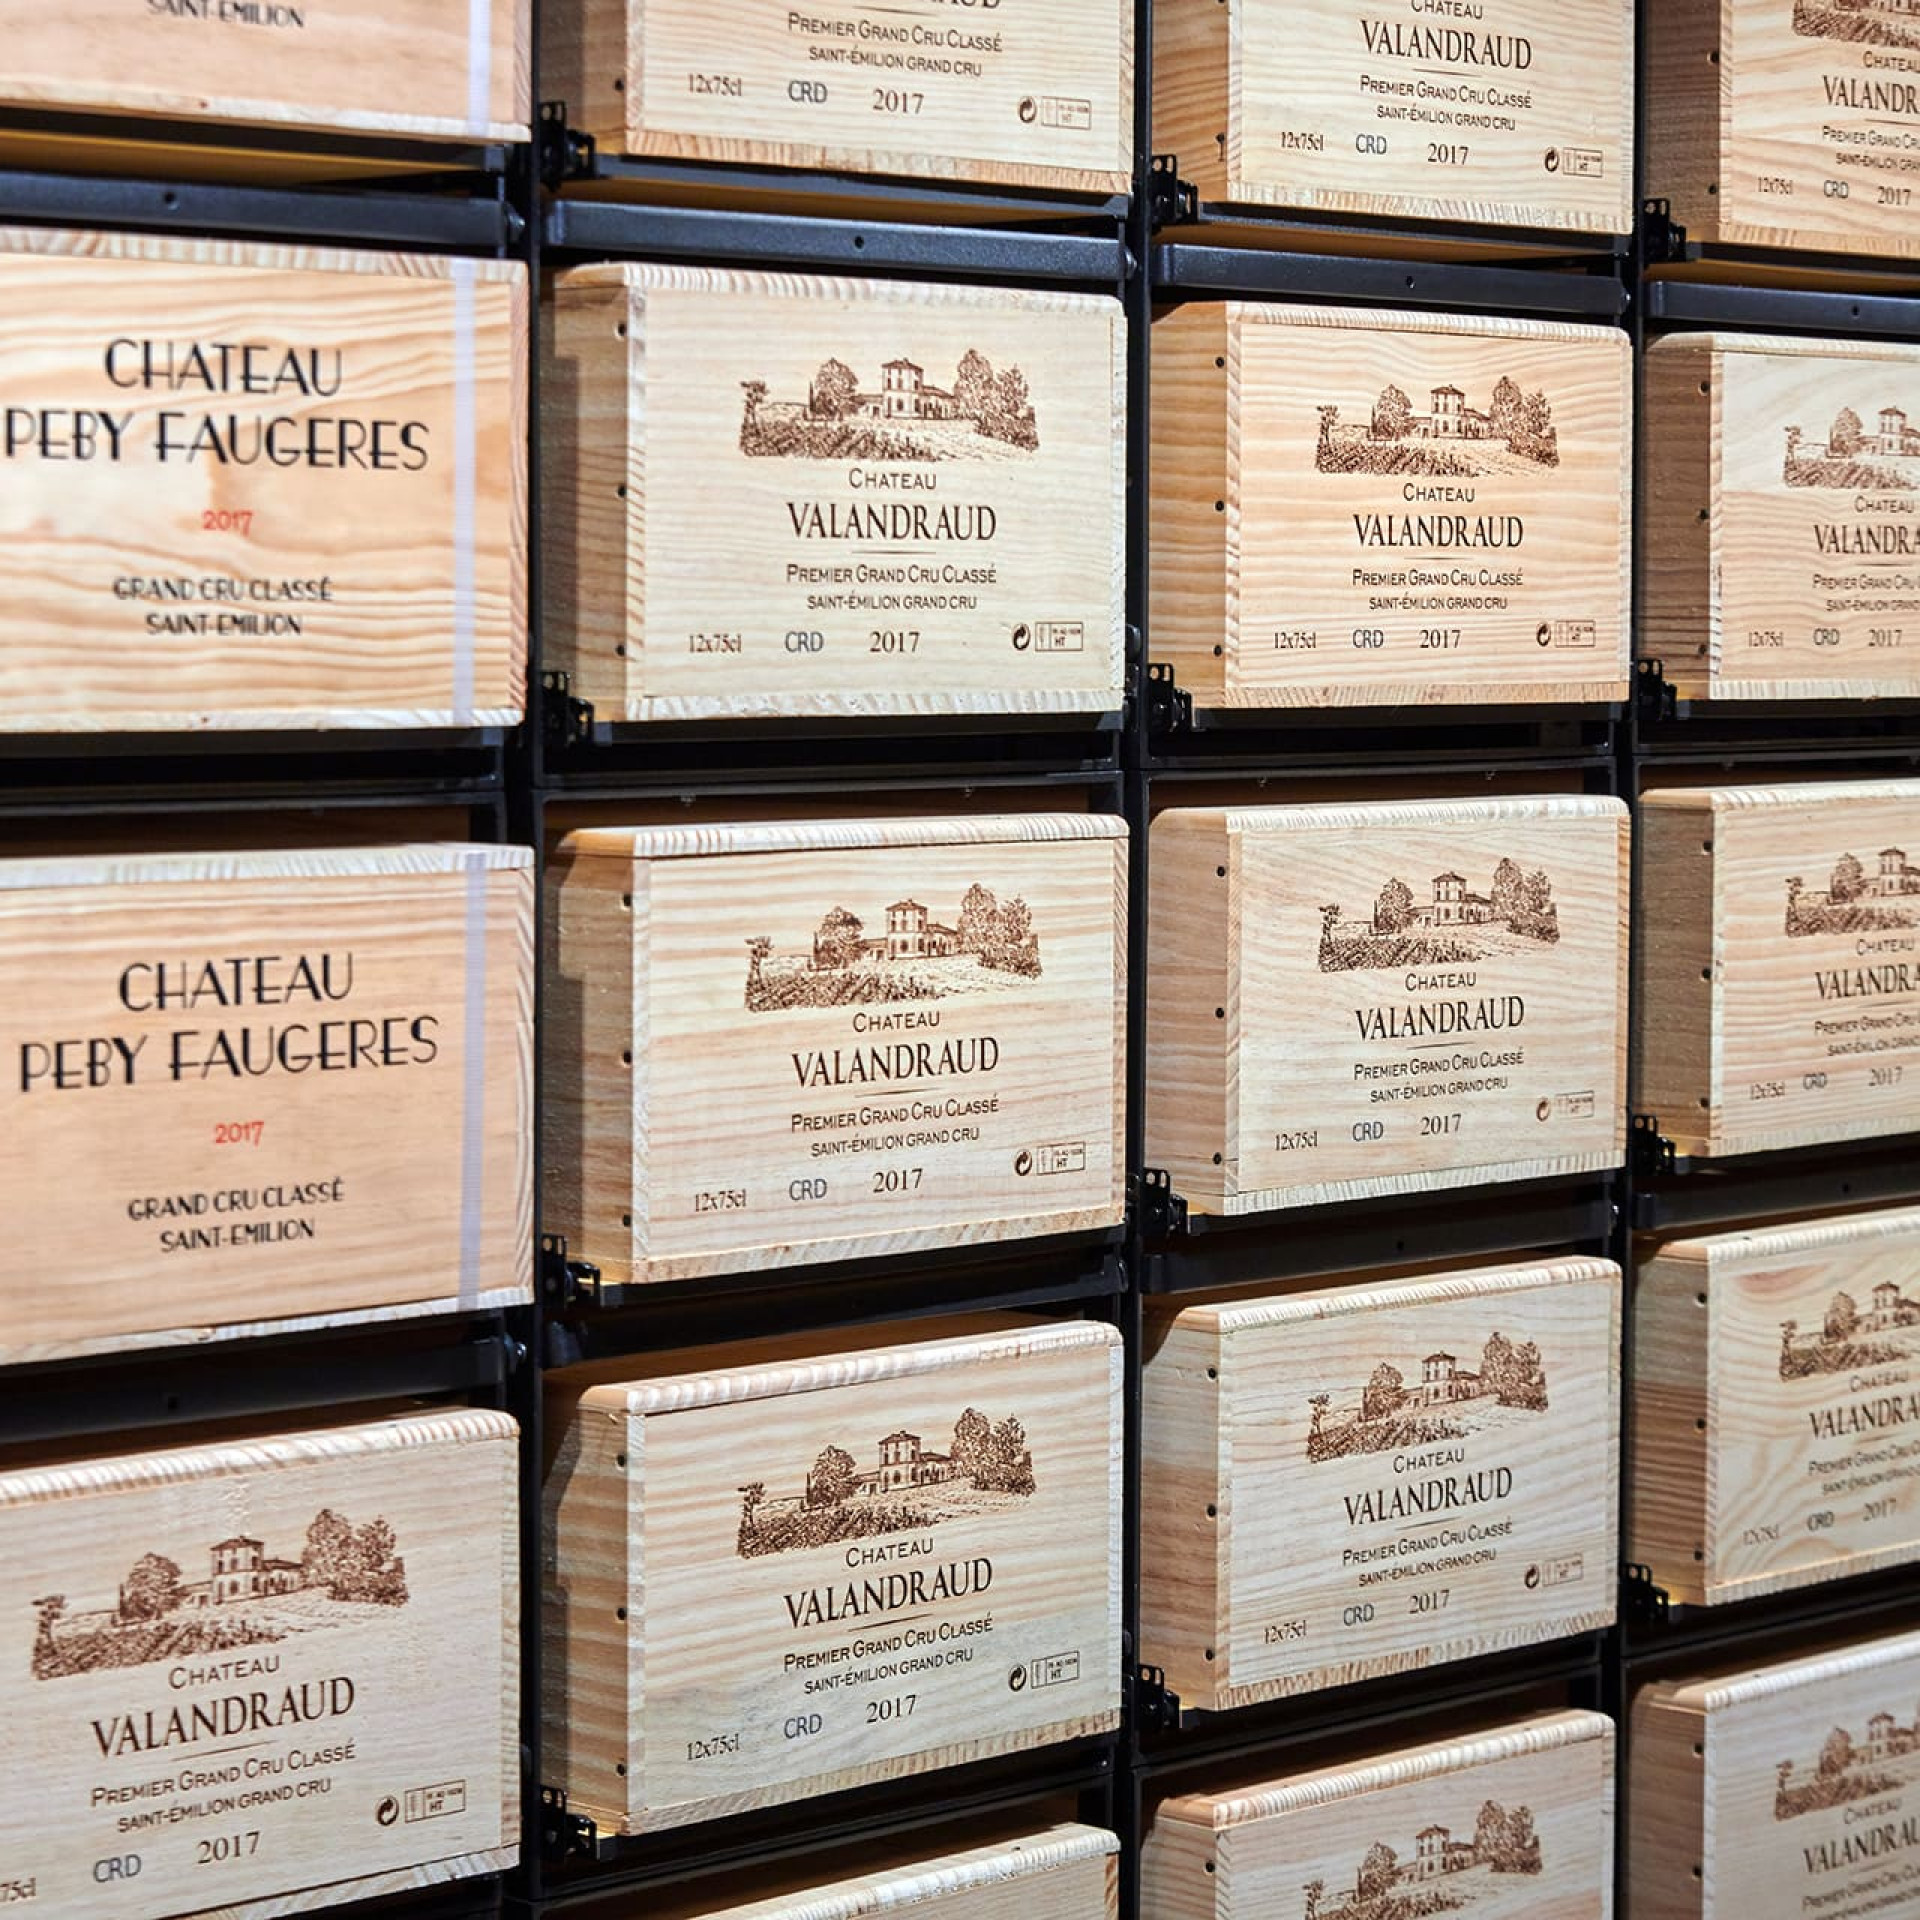 Wein-Regalwand mit Ausziehplatten-Systemen für den leichten Zugang zu den Weinkisten